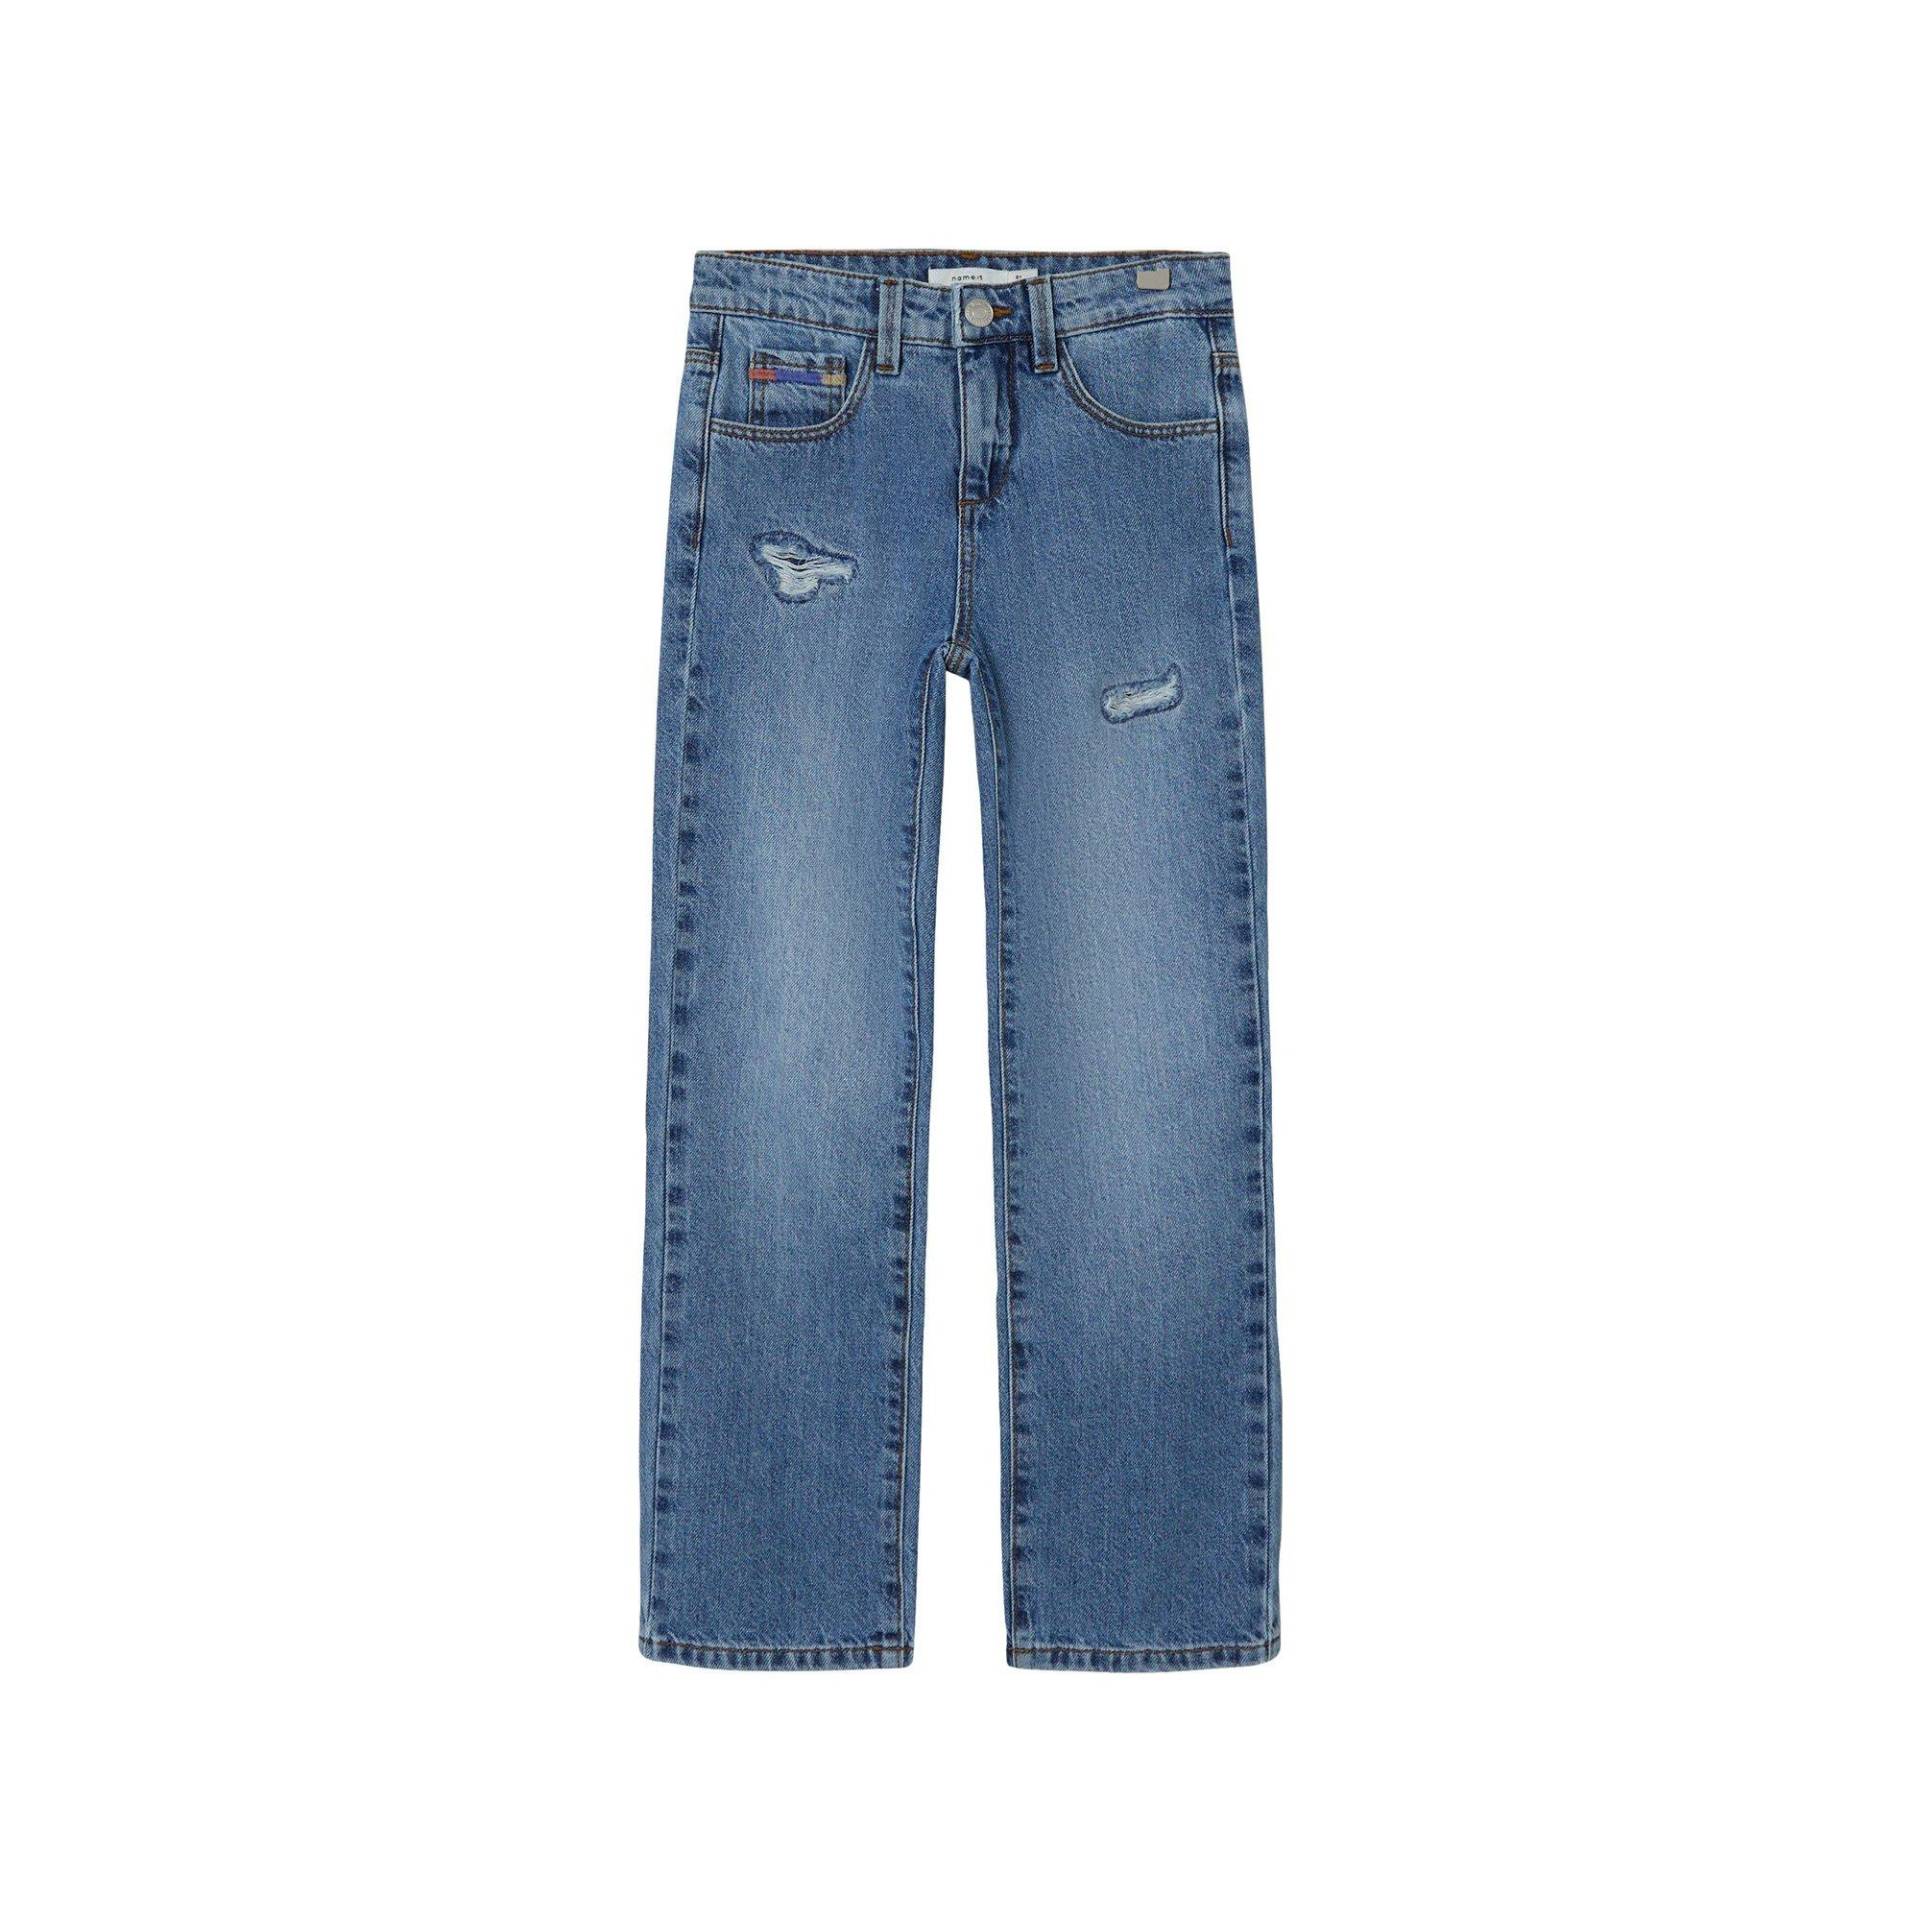 Jeans, Straight Leg Fit Mädchen Blau Denim 122 von Name It